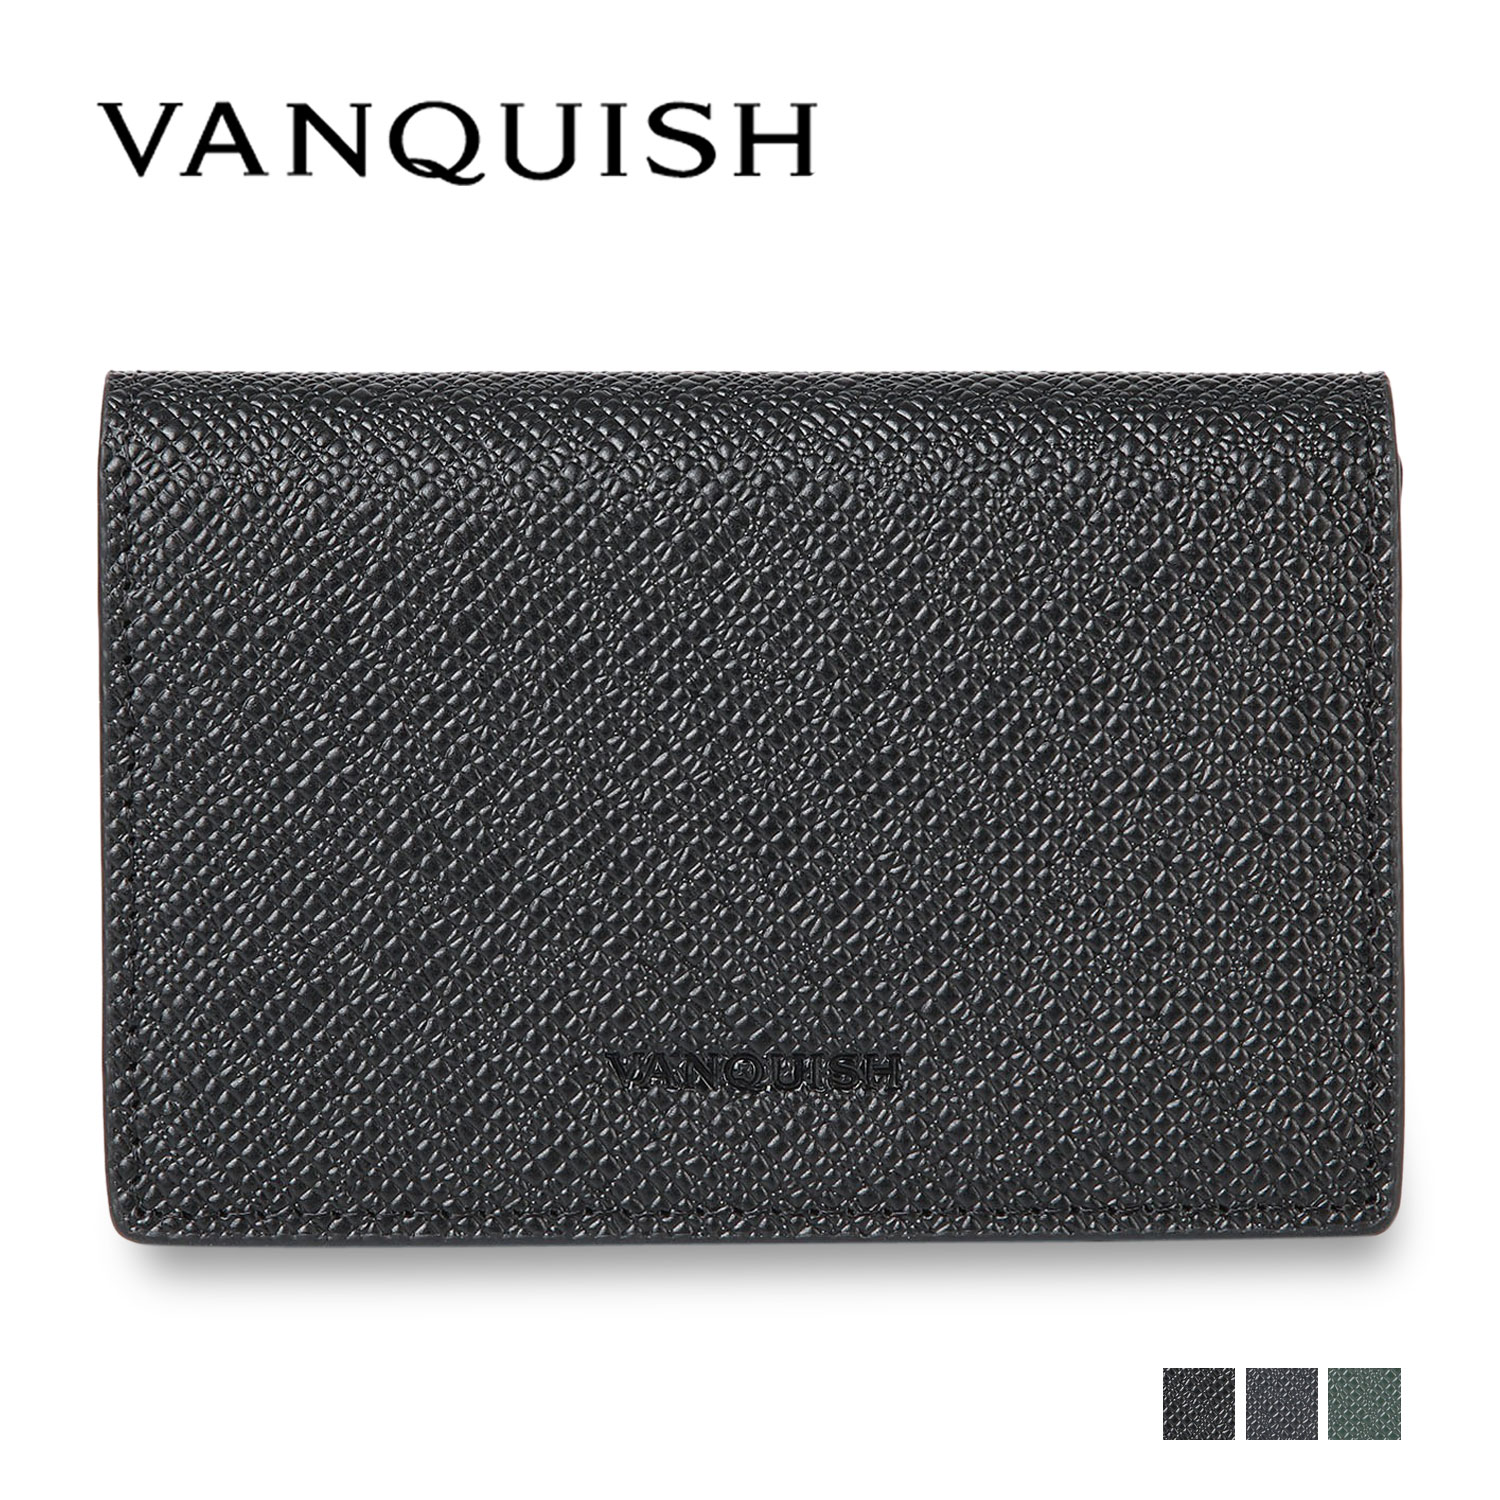 VANQUISH ヴァンキッシュ カードケース 名刺入れ 定期入れ メンズ 本革 CARD CASE ブラック ネイビー ダーク グリーン 黒 43320